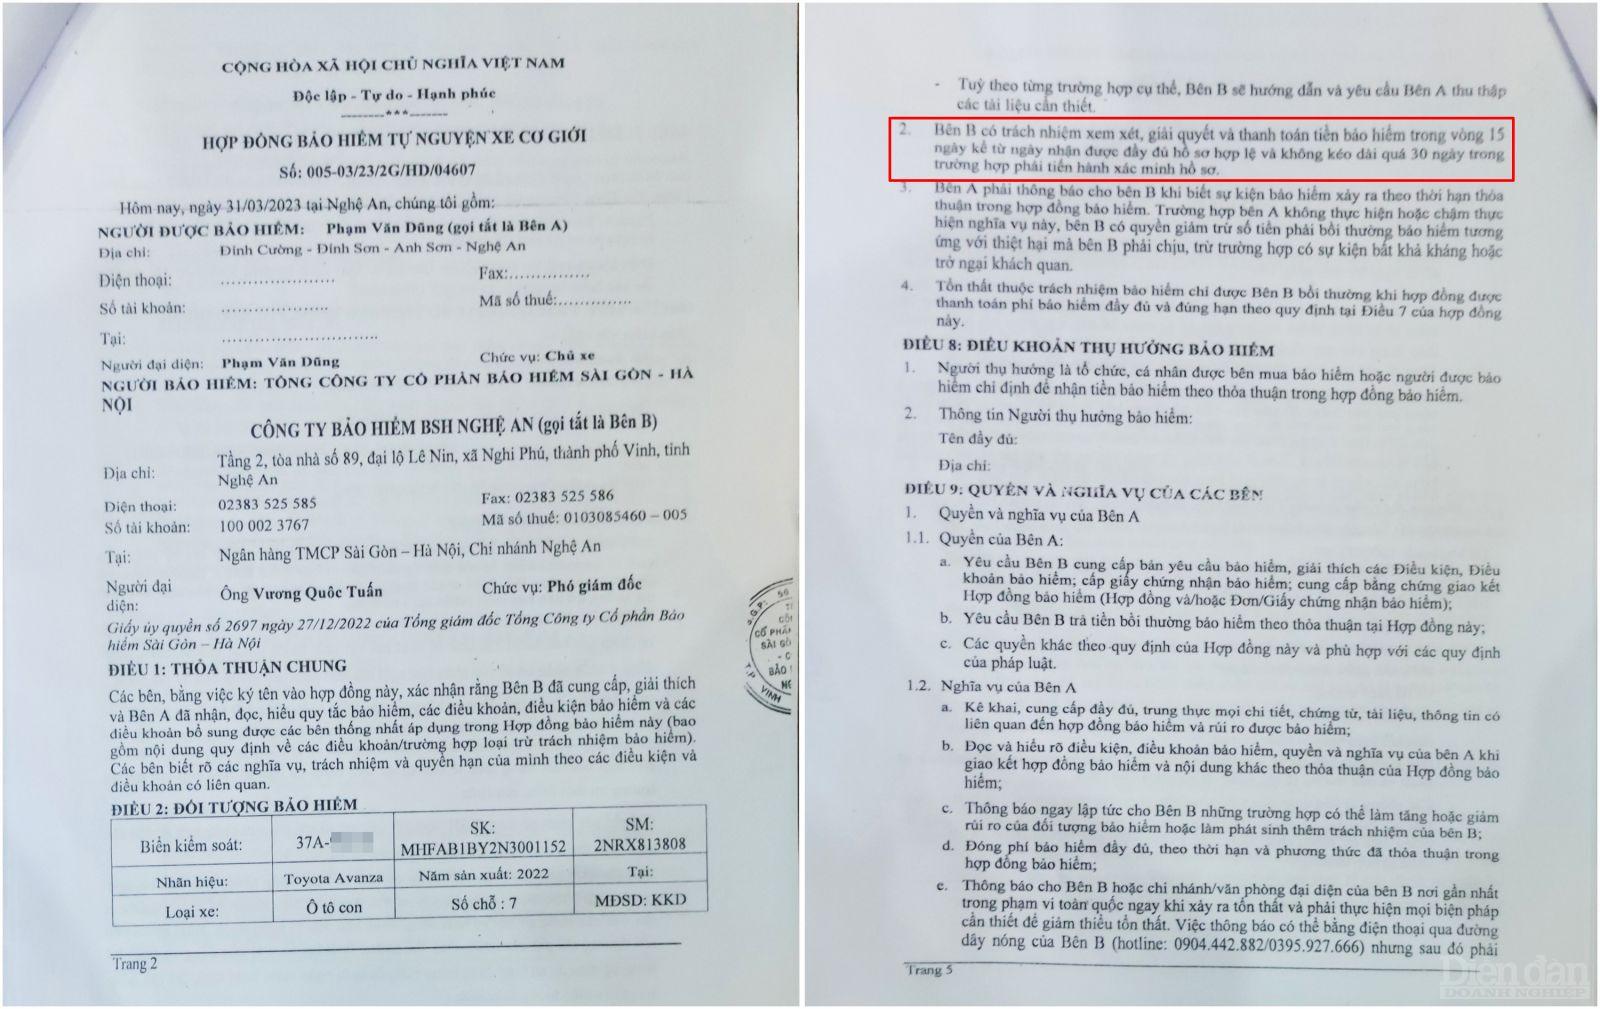 Tại mục 2, Điều 7 của Hợp đồng bảo hiểm giữa anh Phạm Văn Dũng và Công ty Bảo hiểm BSH Nghệ An thể hiện rõ nội dung không được kéo dài quá 30 ngày trong trường hợp phải tiến hành xác minh hồ sơ